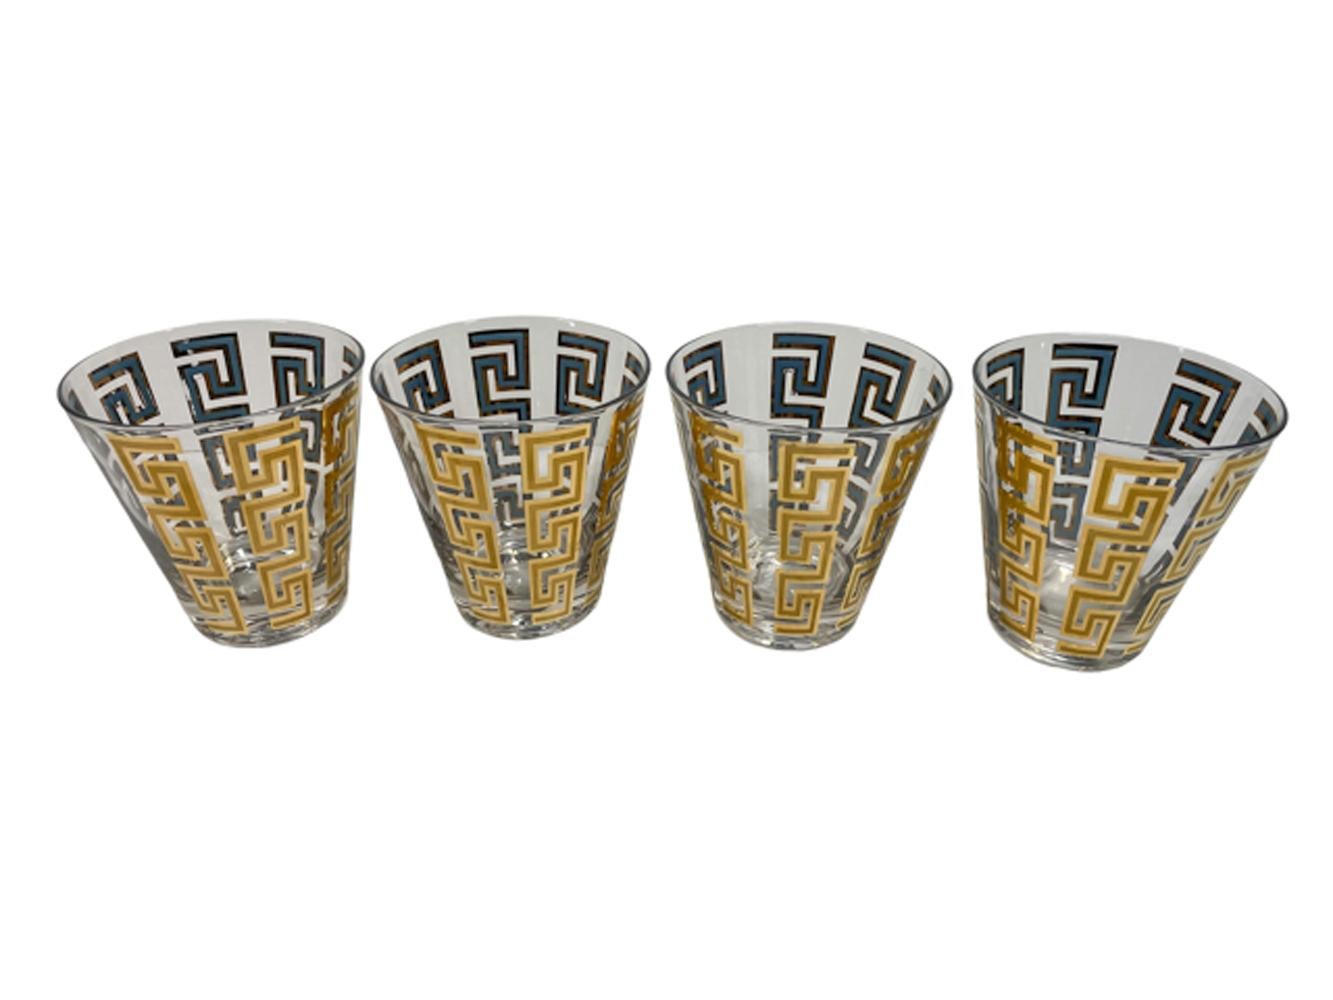 Quatre verres doubles à l'ancienne de Culver, LTD. aux côtés effilés avec des bandes verticales en forme de clé grecque en or 22k sur émail bleu. L'or avec une finition satinée à l'intérieur de la brillance à l'extérieur et le bleu visible